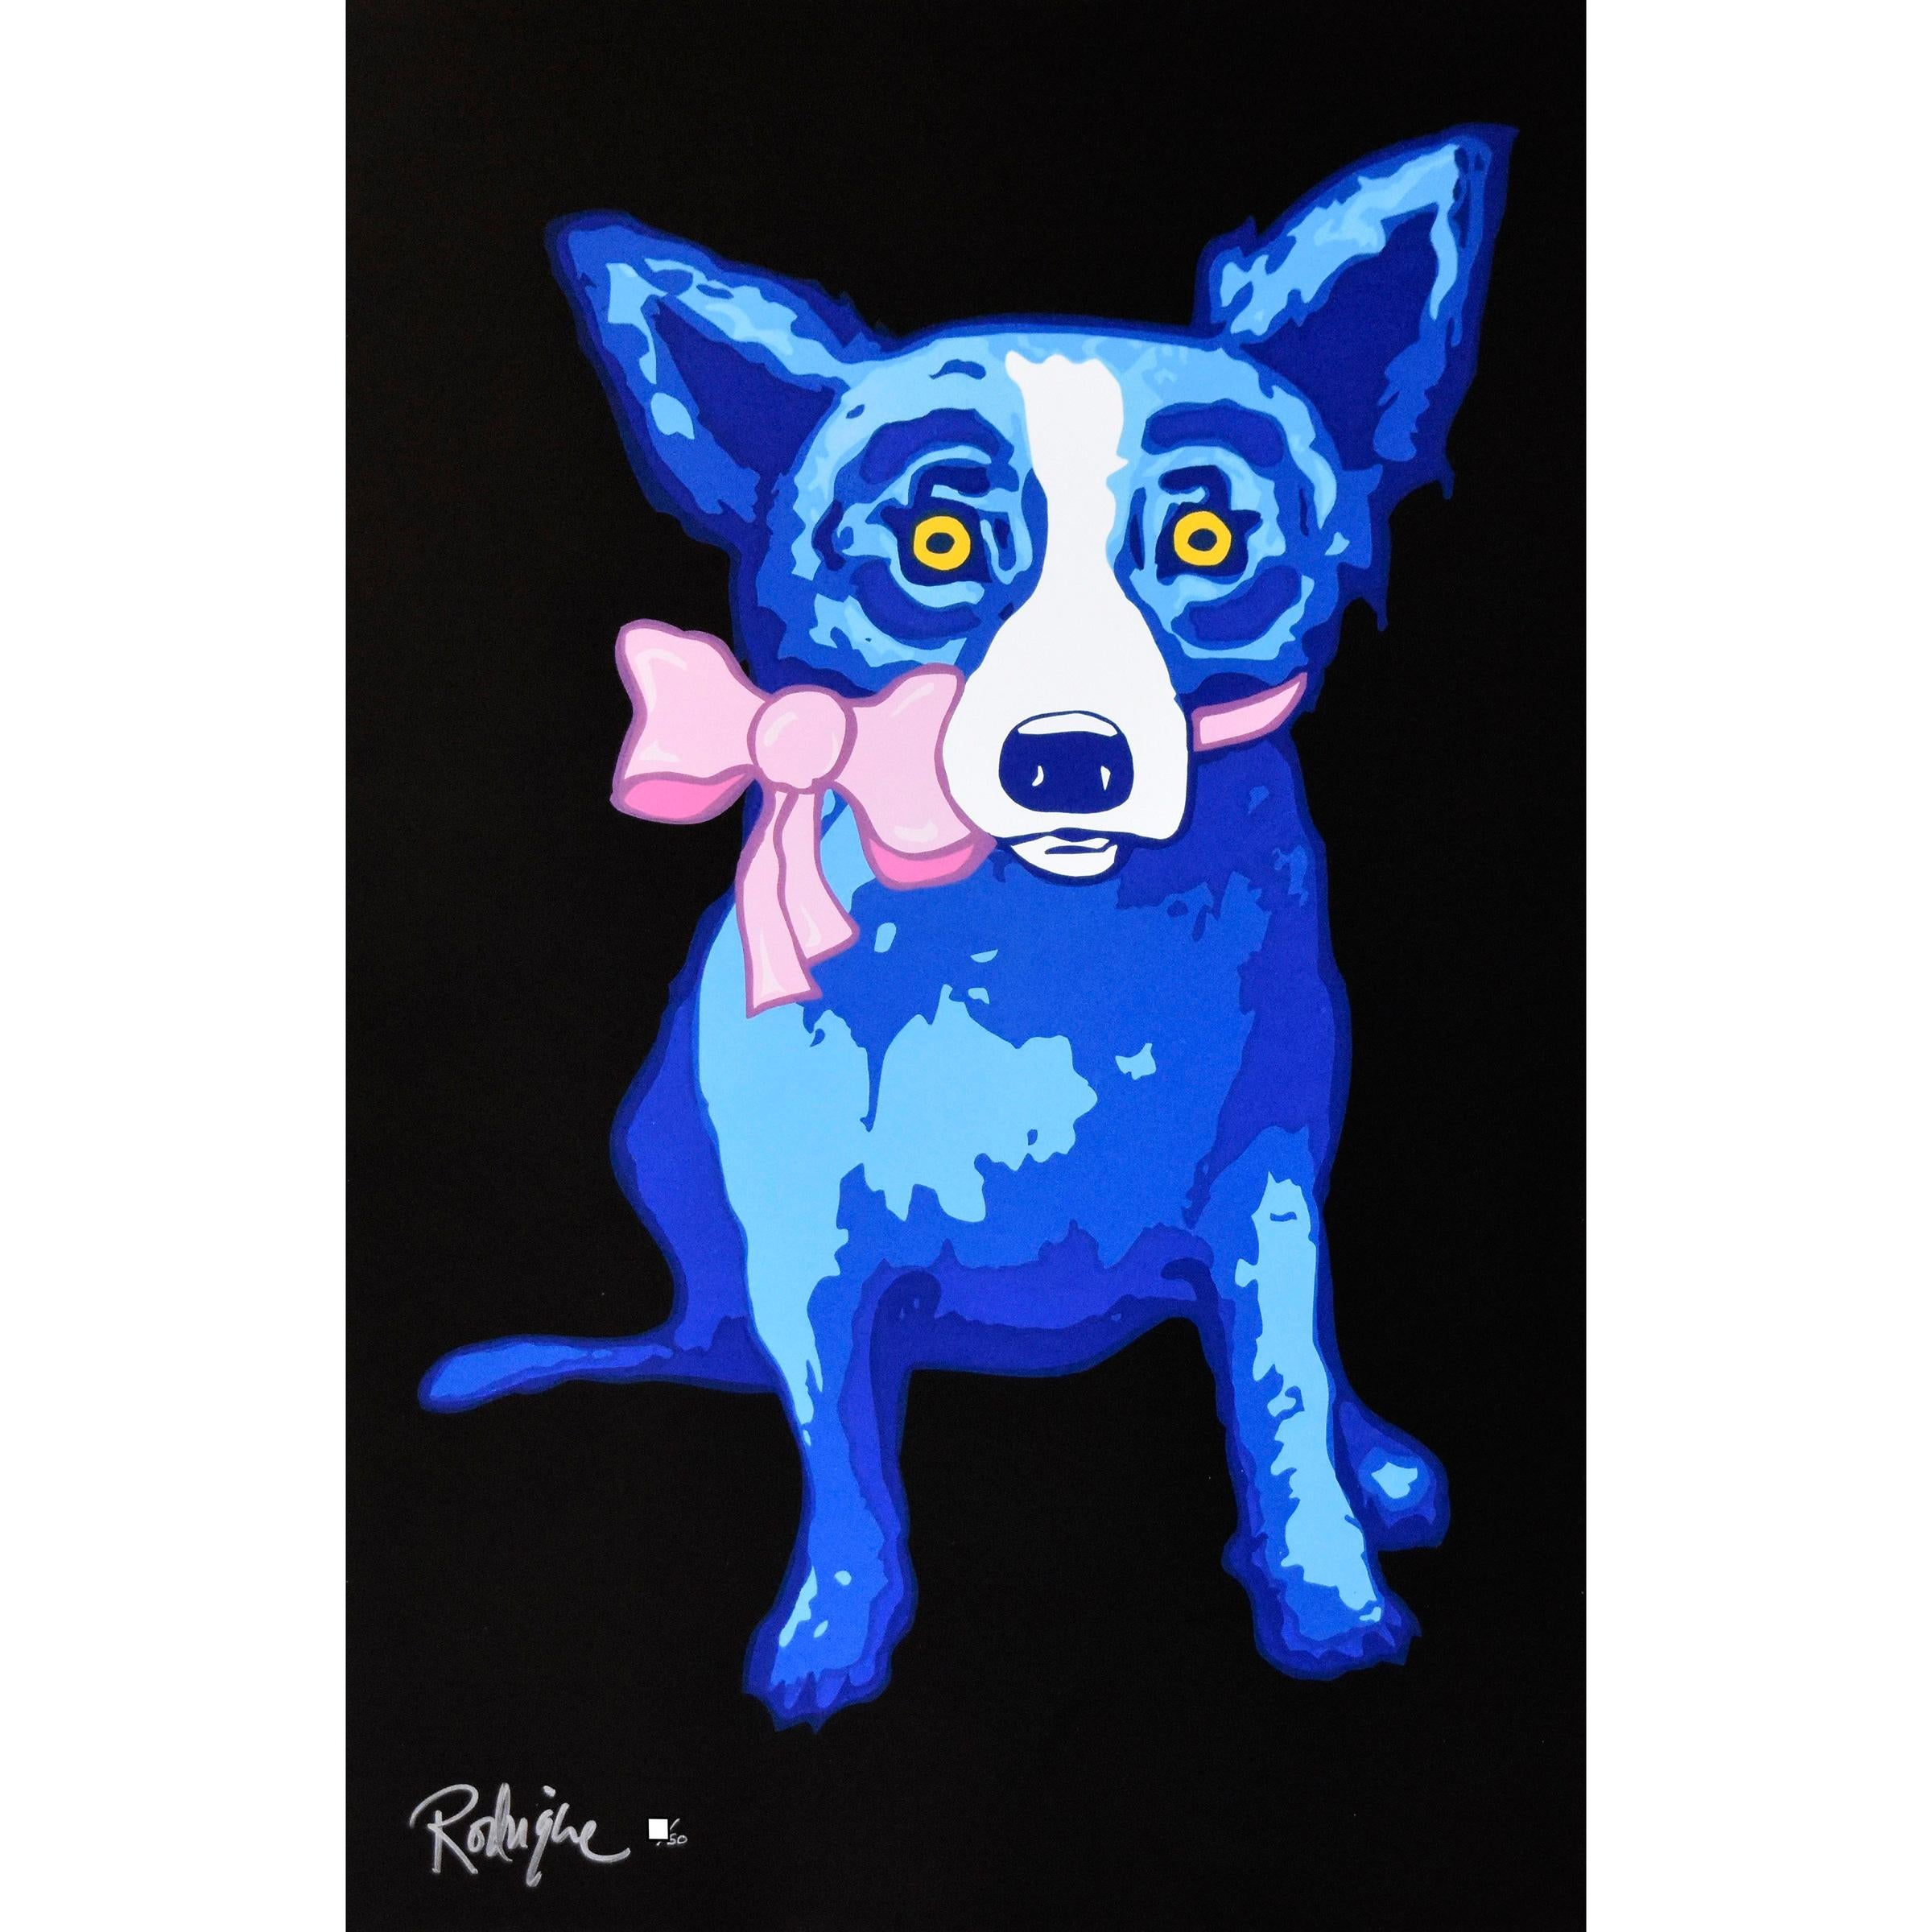 George Rodrigue Animal Print - Blue Dog "Sweetie Pie - Black" Signed Numbered Print